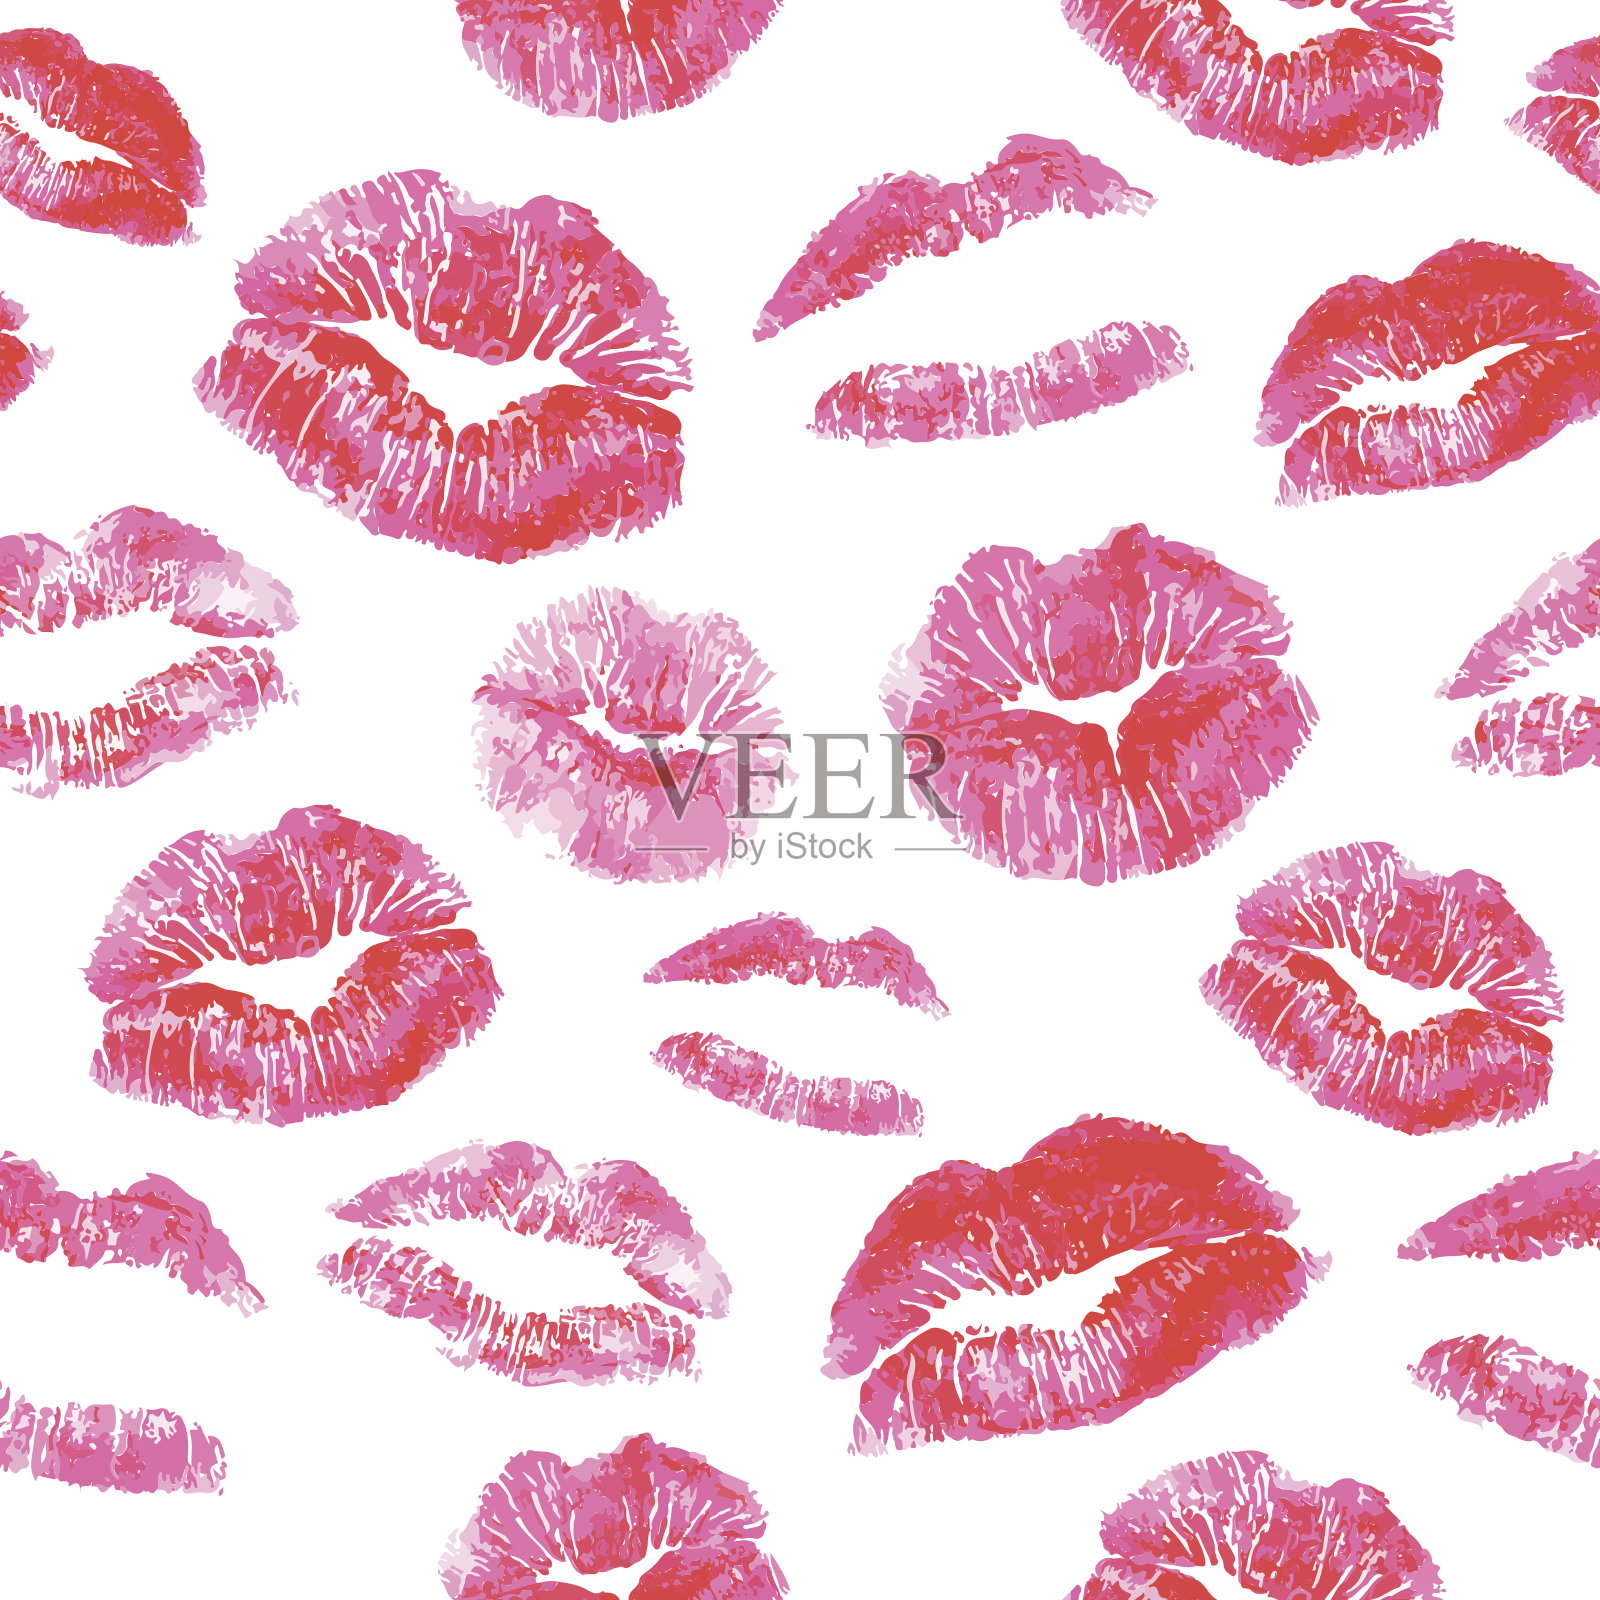 各种粉红色和红色的唇形在白色的背景设计元素图片